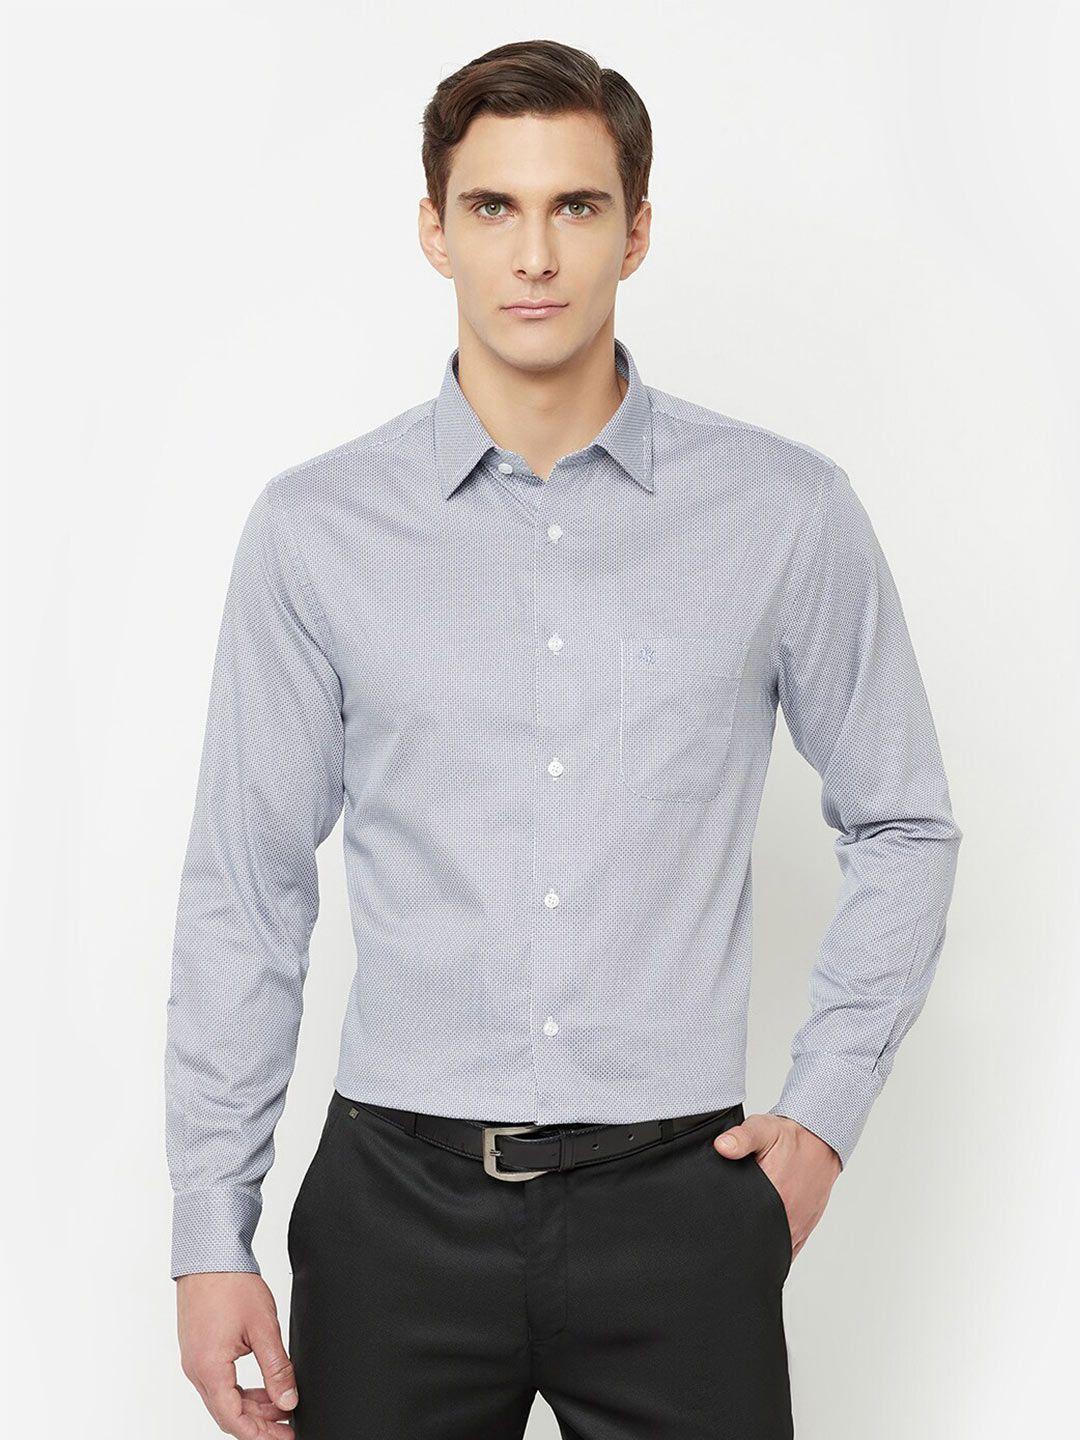 cantabil men grey printed formal shirt